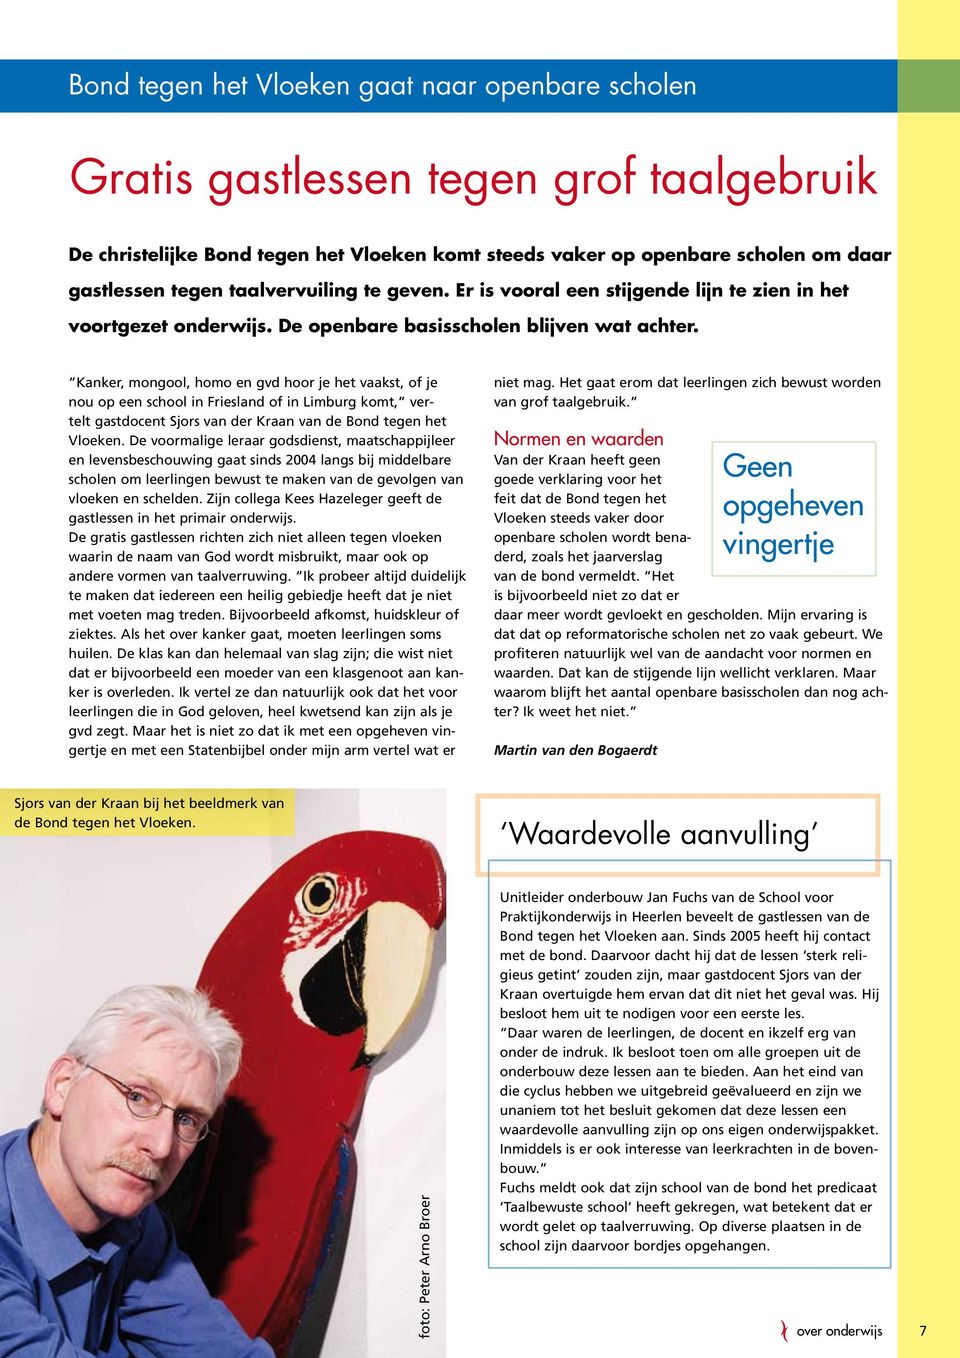 Kanker, mongool, homo en gvd hoor je het vaakst, of je nou op een school in Friesland of in Limburg komt, vertelt gastdocent Sjors van der Kraan van de Bond tegen het Vloeken.